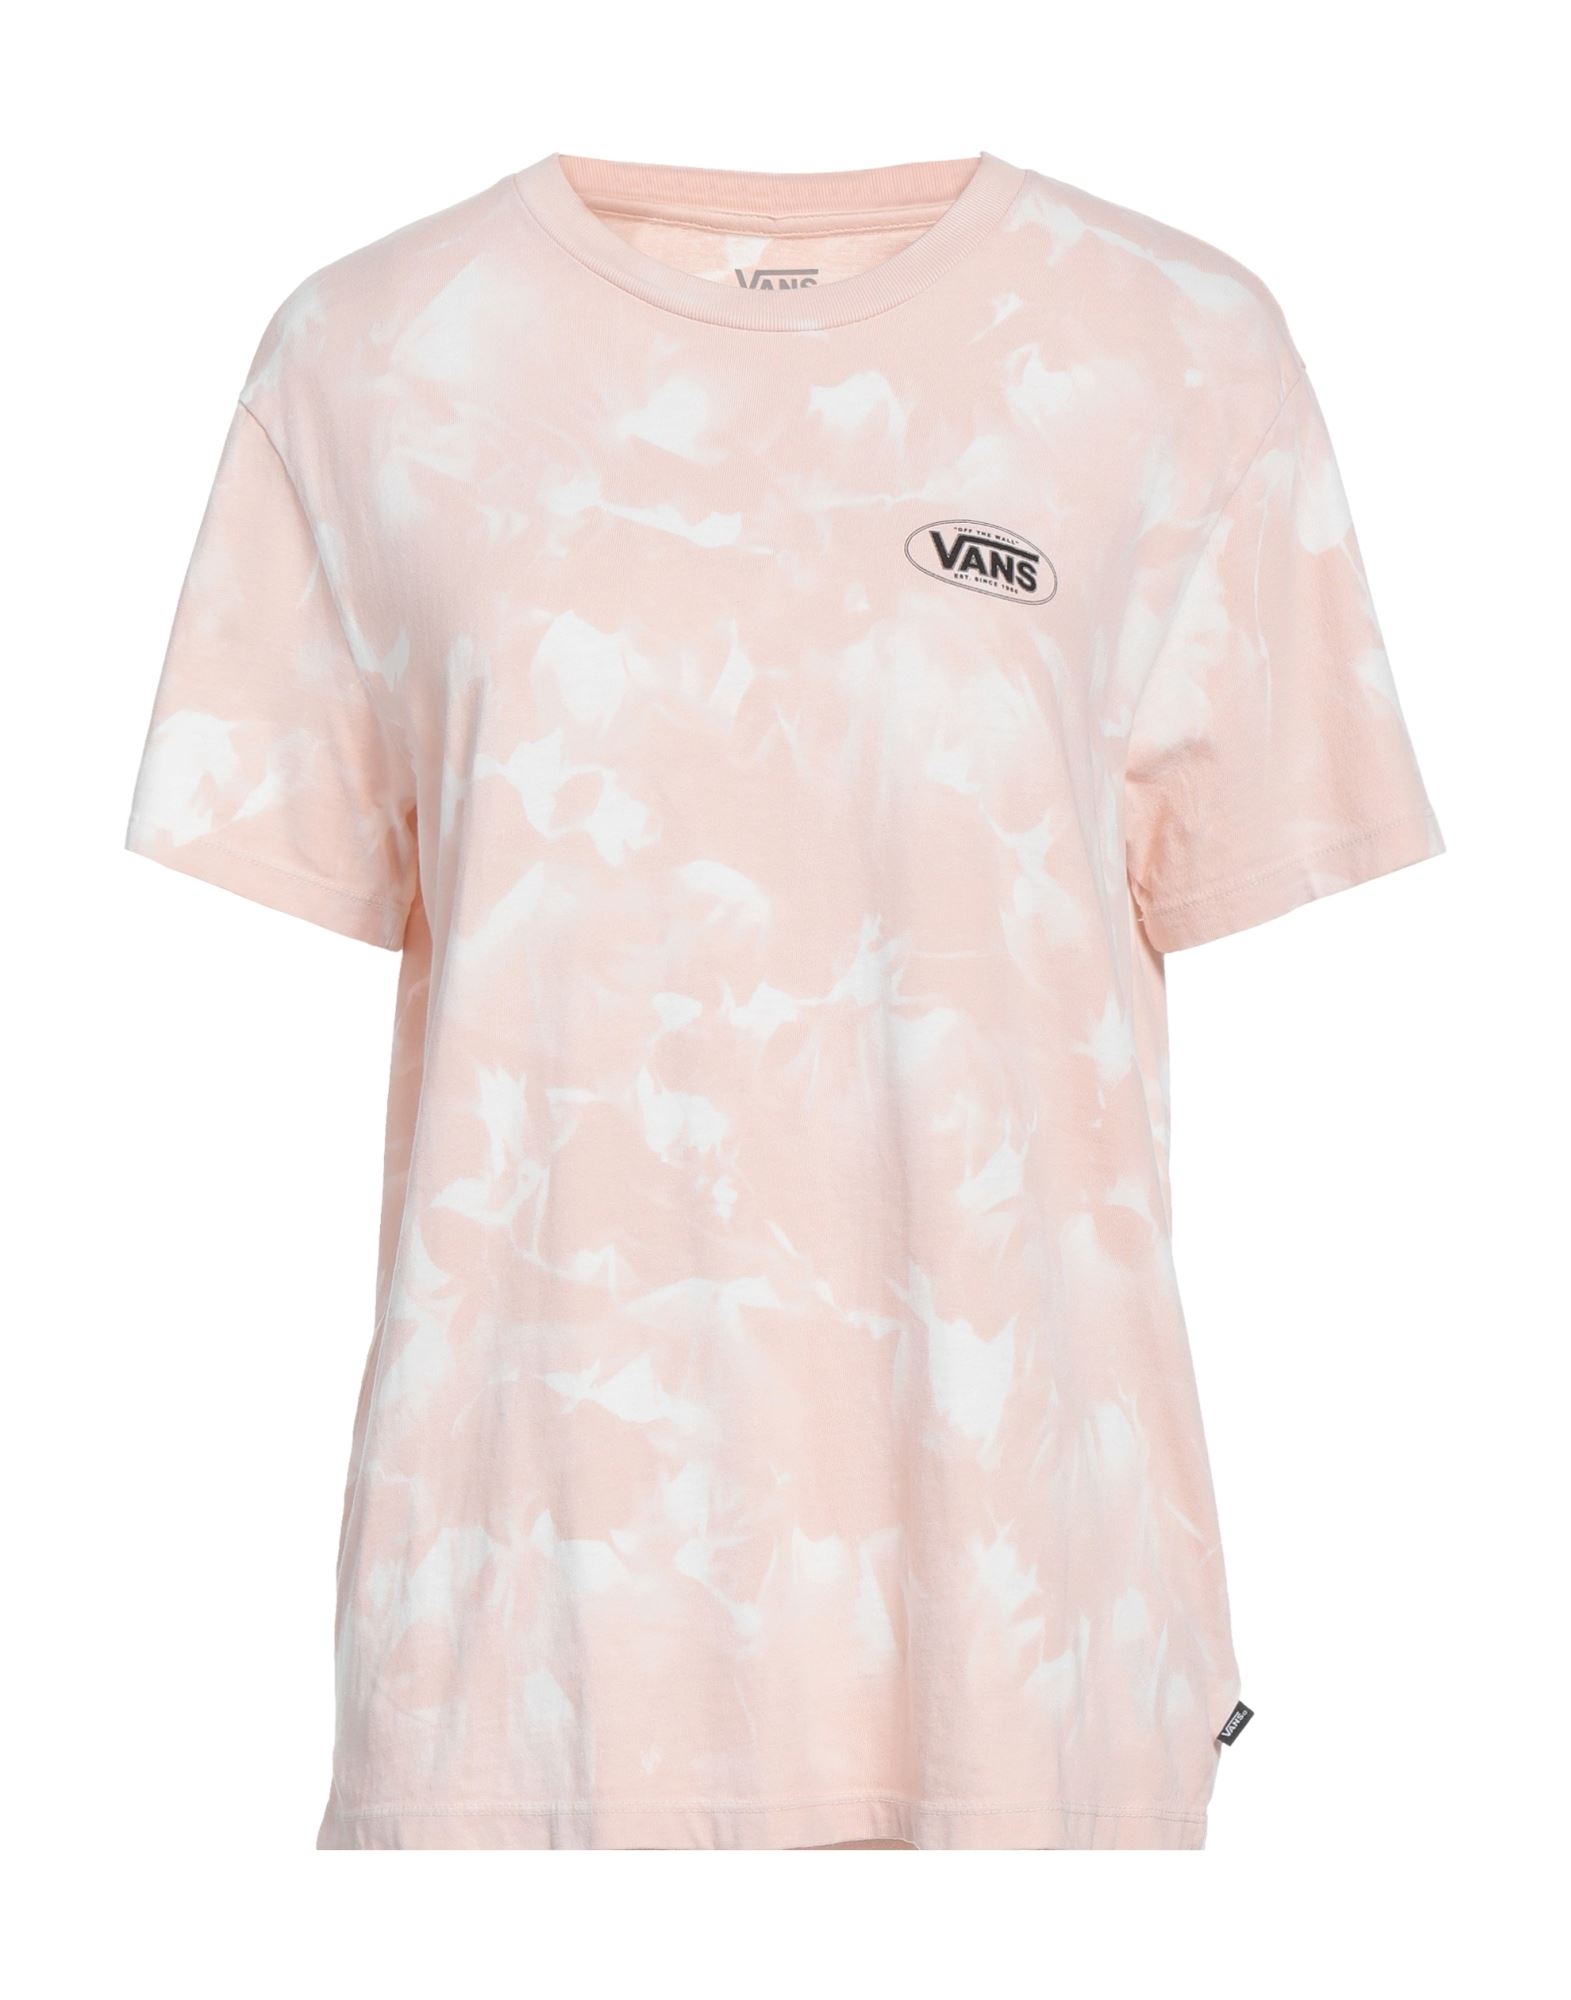 Vans Woman T-shirt Light Pink Size L Cotton